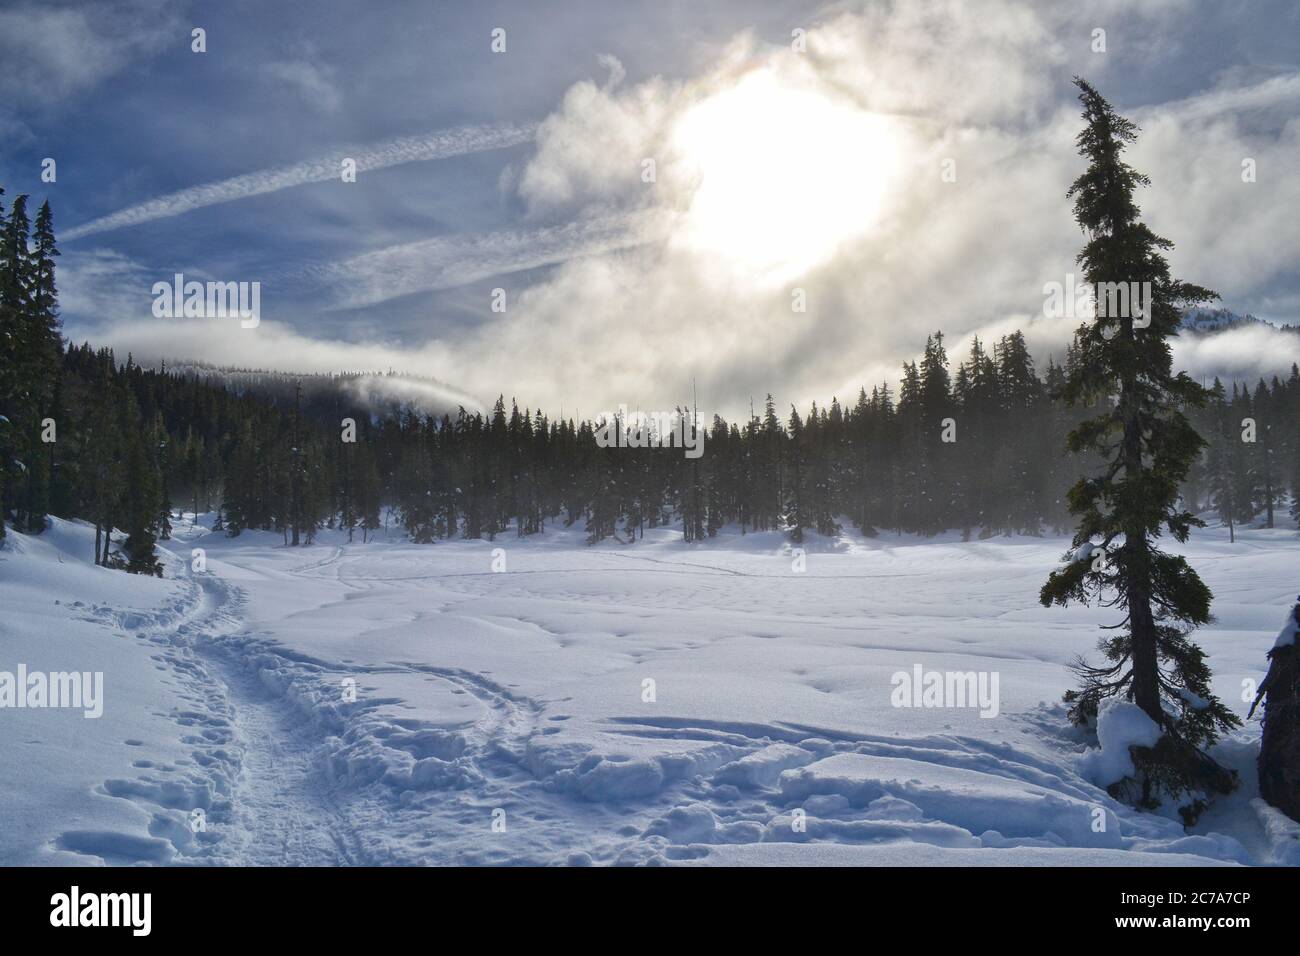 Sci di fondo e racchette da neve invernali sull'altopiano Proibita nel Parco Provinciale di Strathcona sull'Isola di Vancouver, British Columbia, Canada Foto Stock